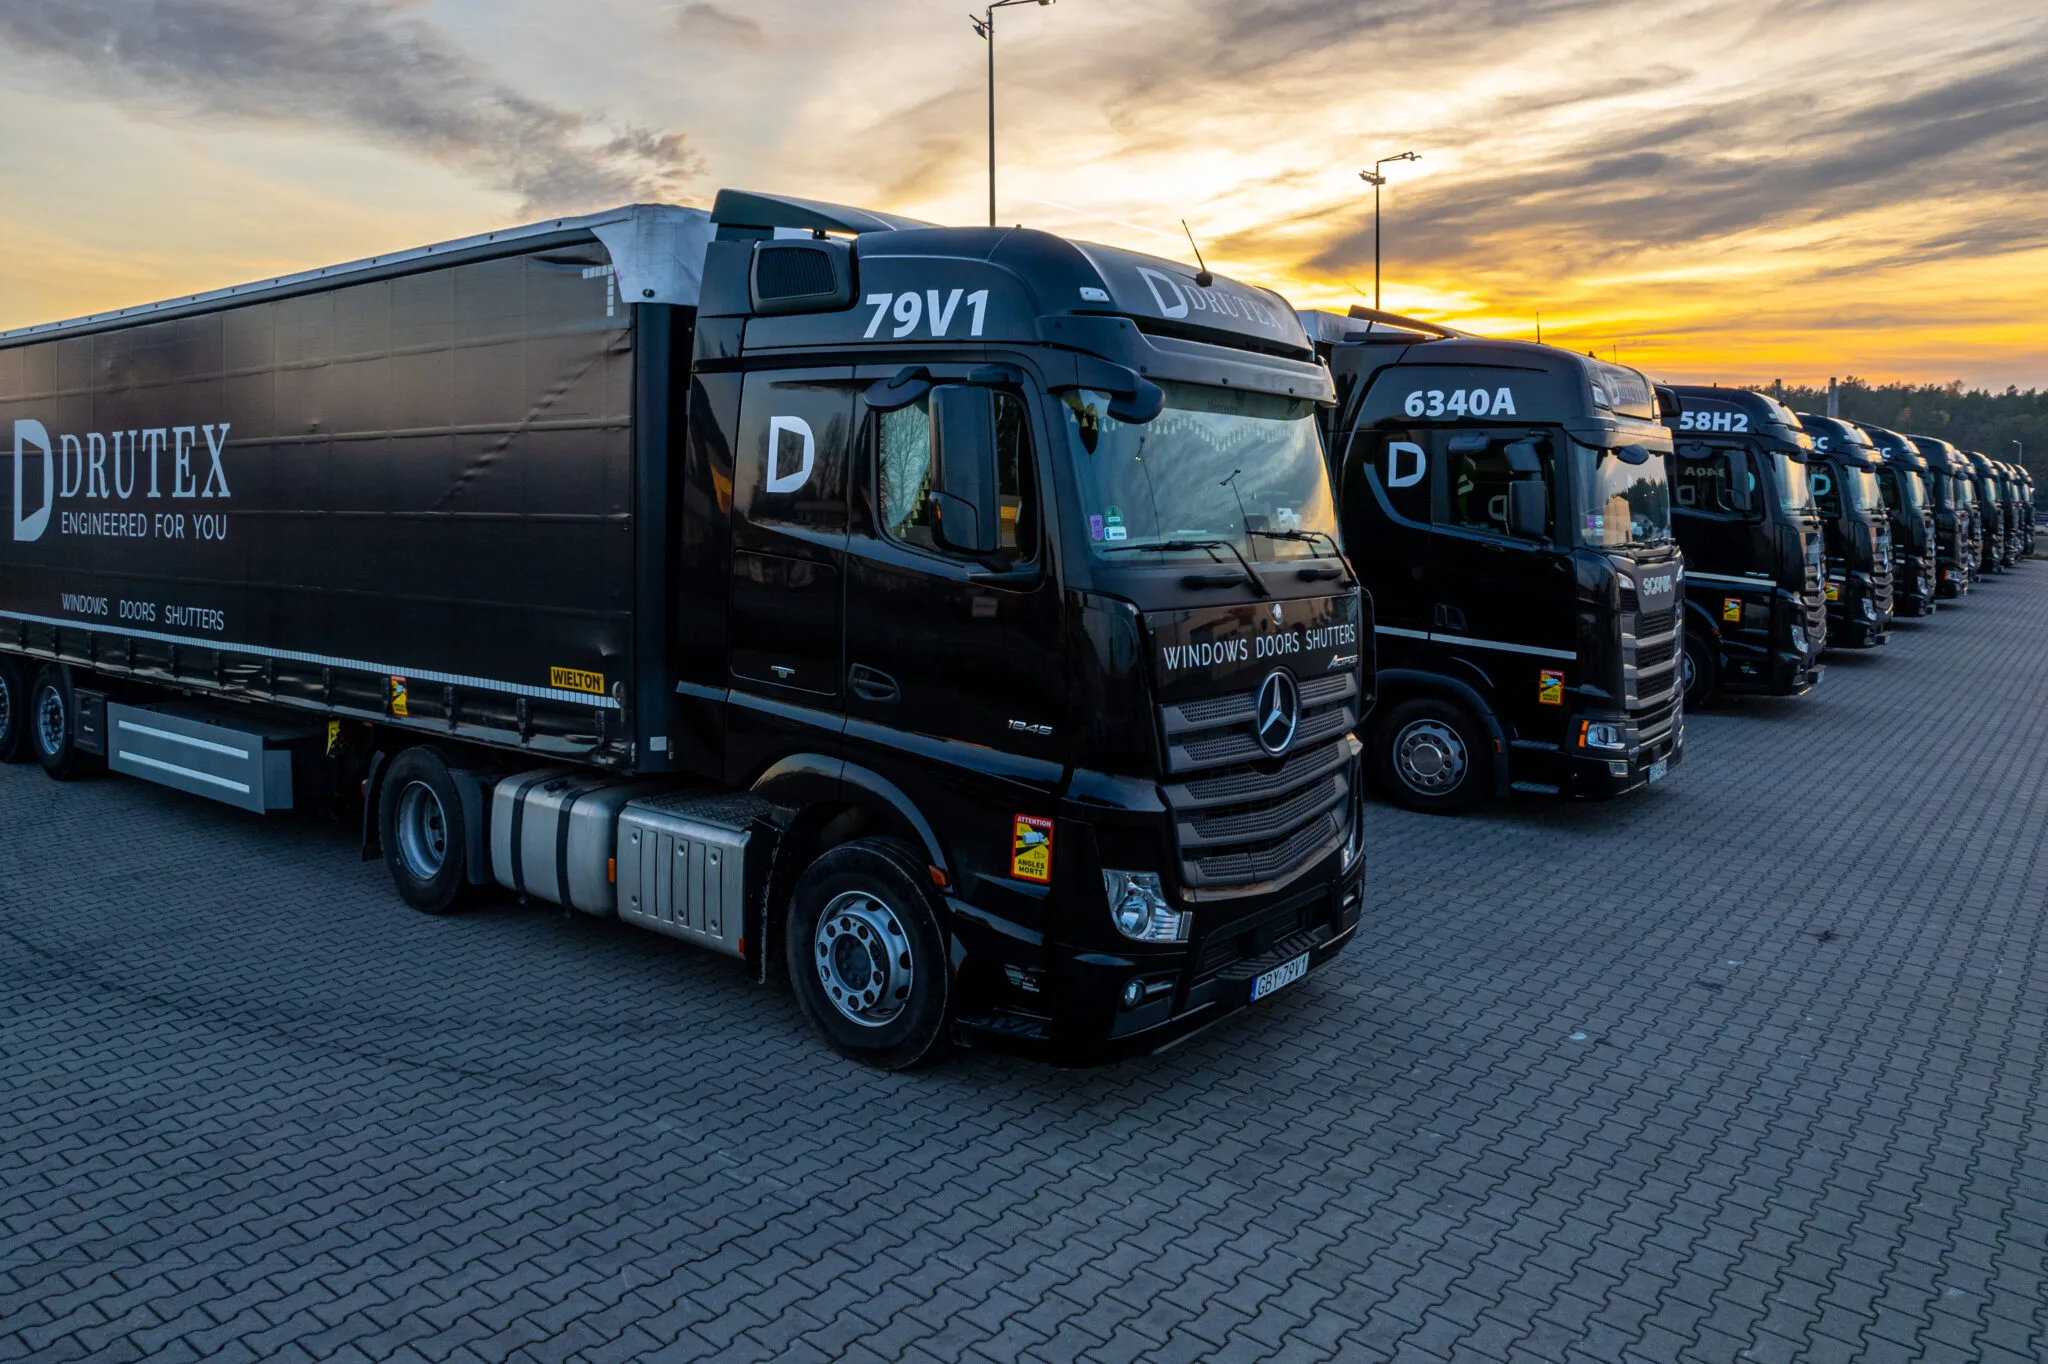 Eine Reihe von schwarzen Lastwagen der Firma DRUTEX, aufgereiht auf einem Parkplatz bei Sonnenuntergang